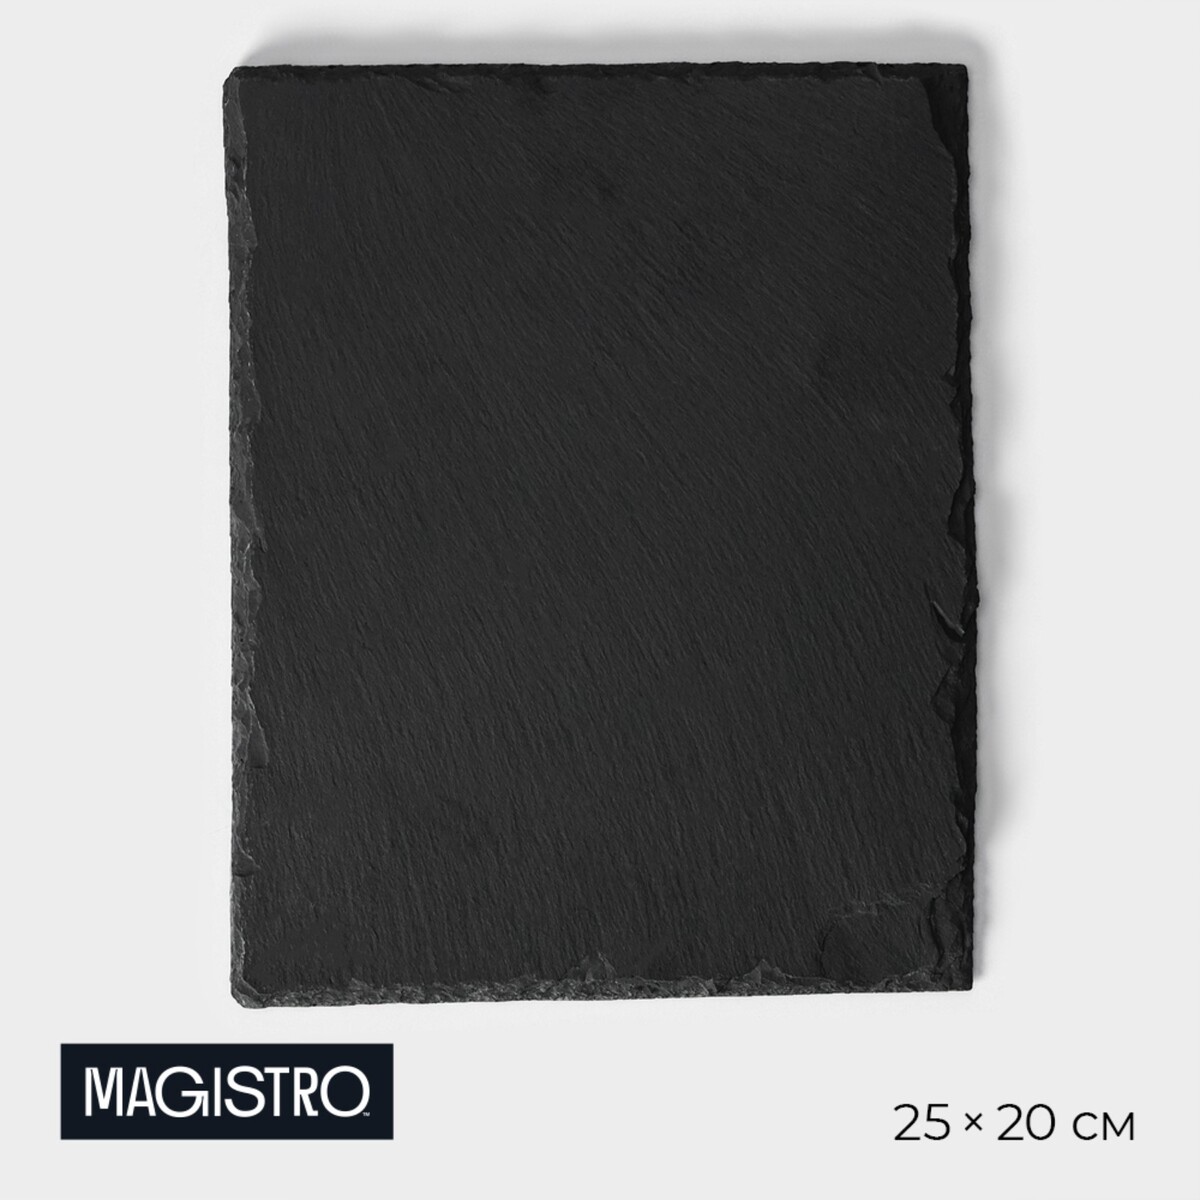 Доска для подачи из сланца magistro valley, 25×20 см доска для подачи из сланца magistro valley d 40 см